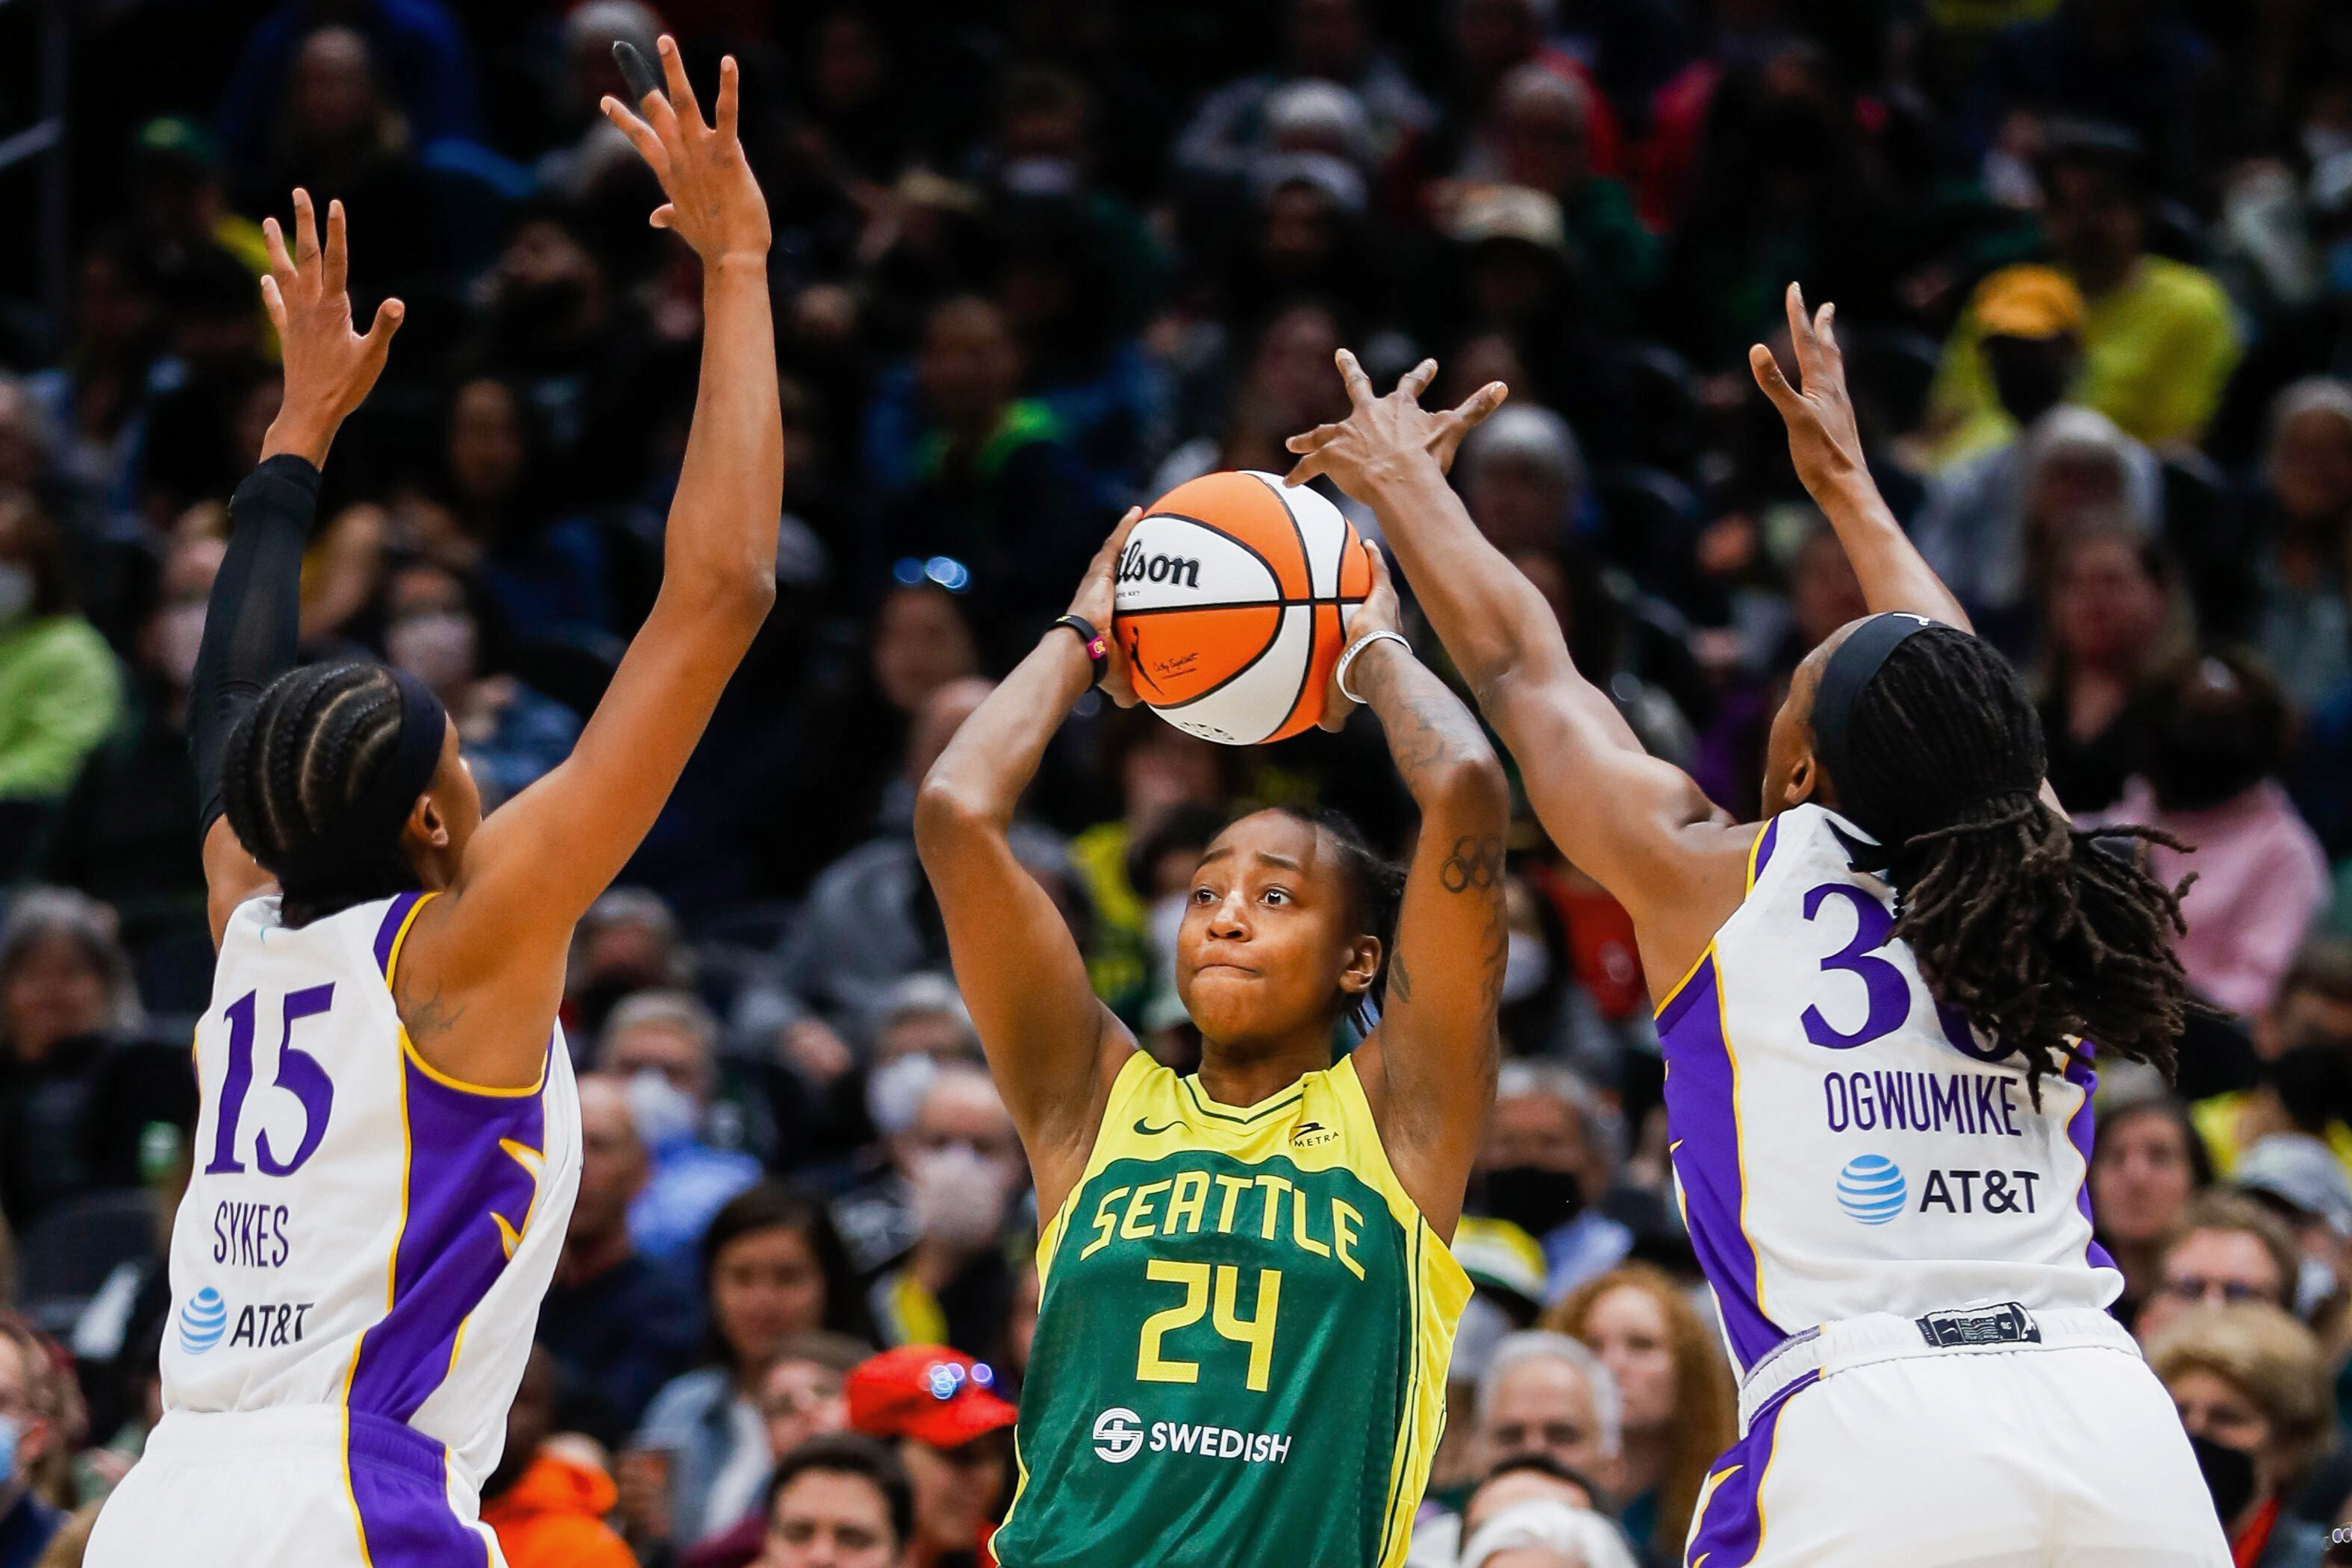 WNBA to play pre-season game in Edmonton